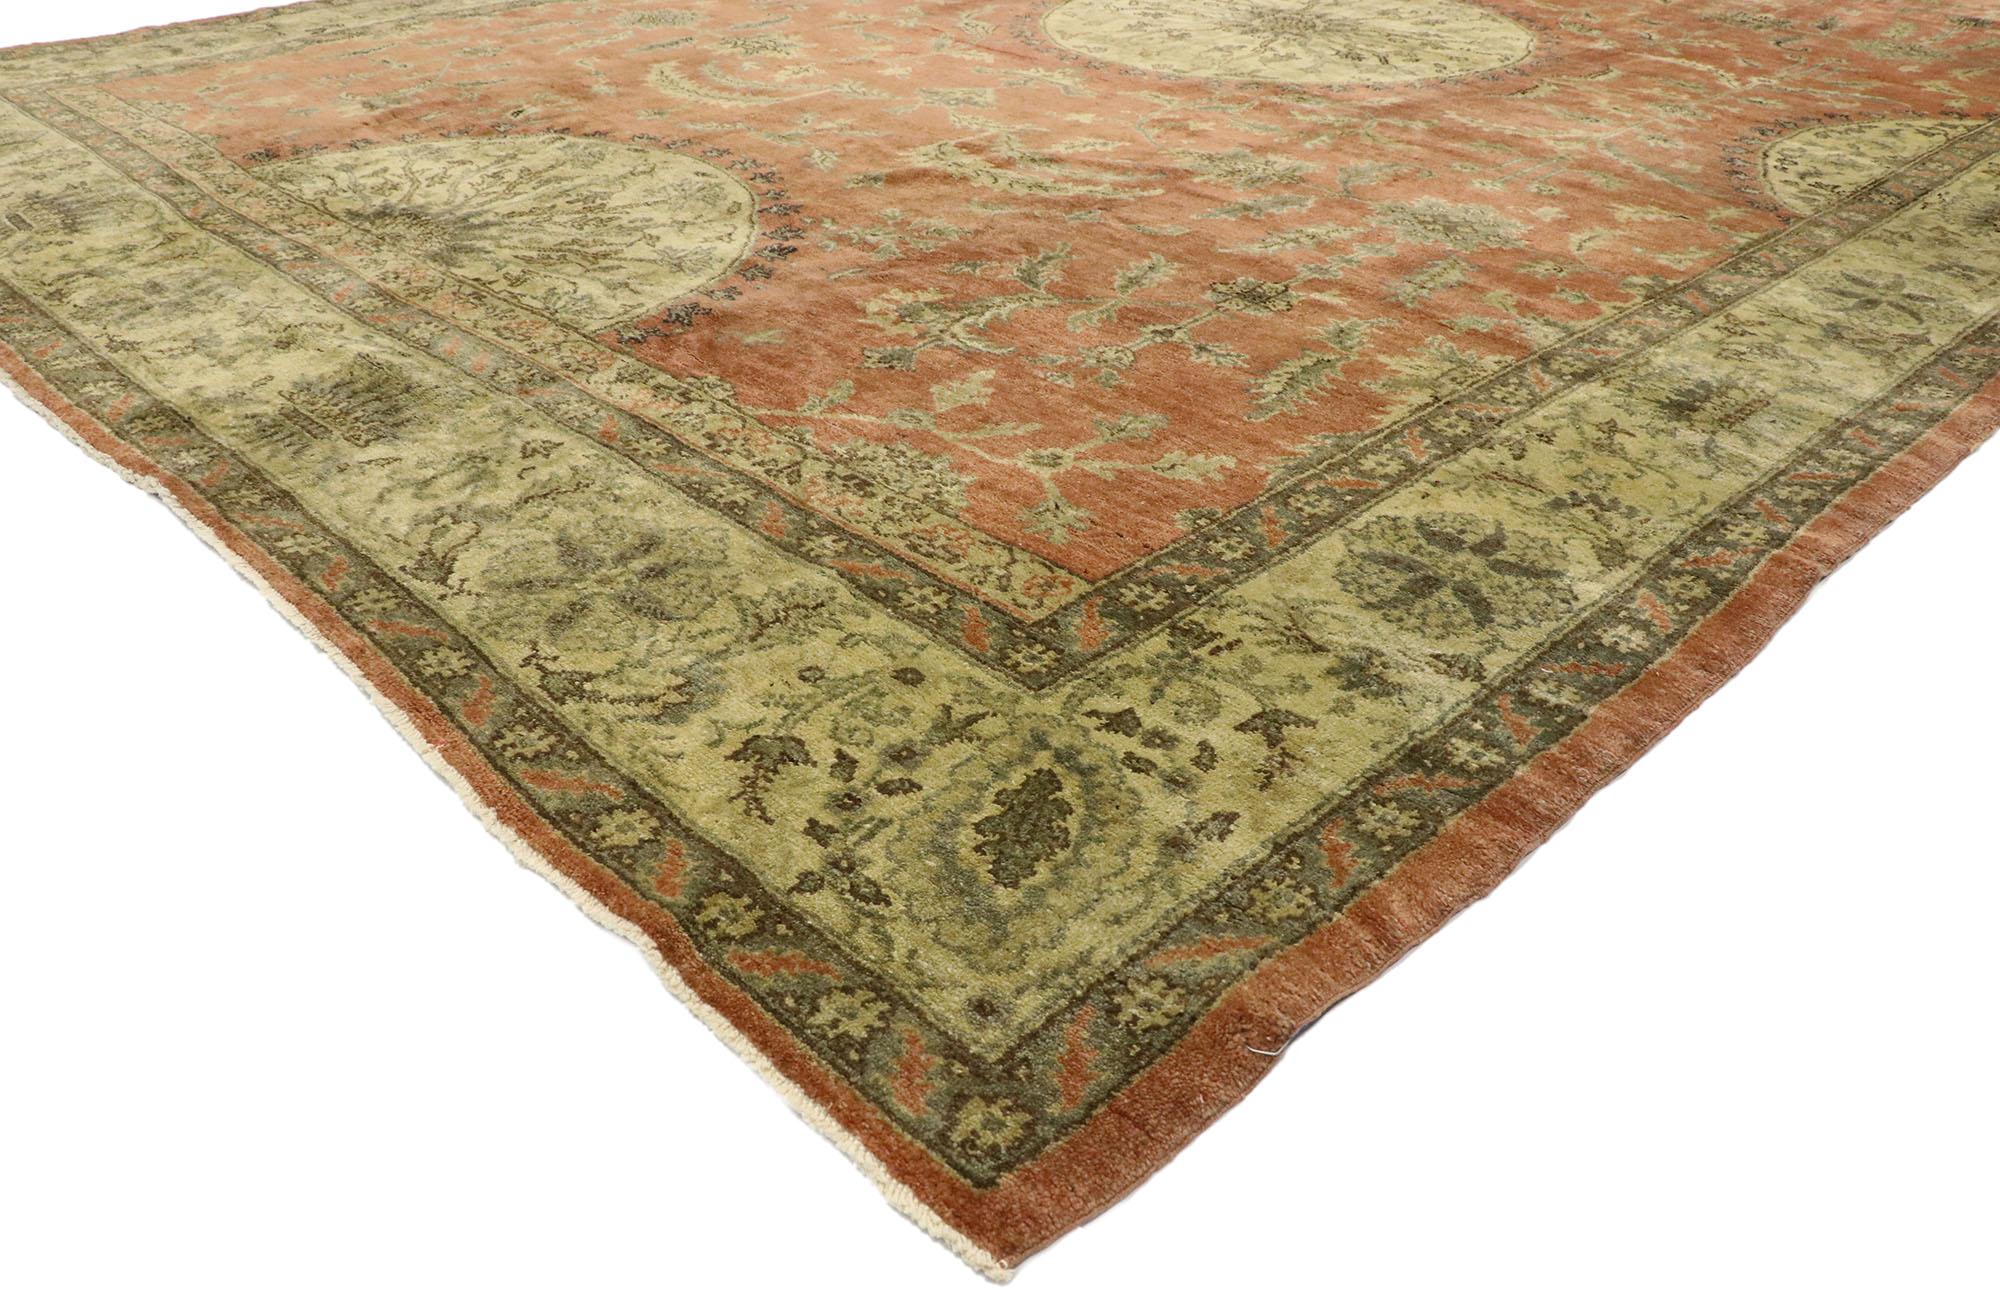 50499, tapis turc Oushak vintage en mauvais état, de style Manoir anglais rustique. M Ce tapis turc Oushak en laine nouée à la main présente un médaillon central rond entouré d'un motif botanique composé de feuilles de faucille courbées, de